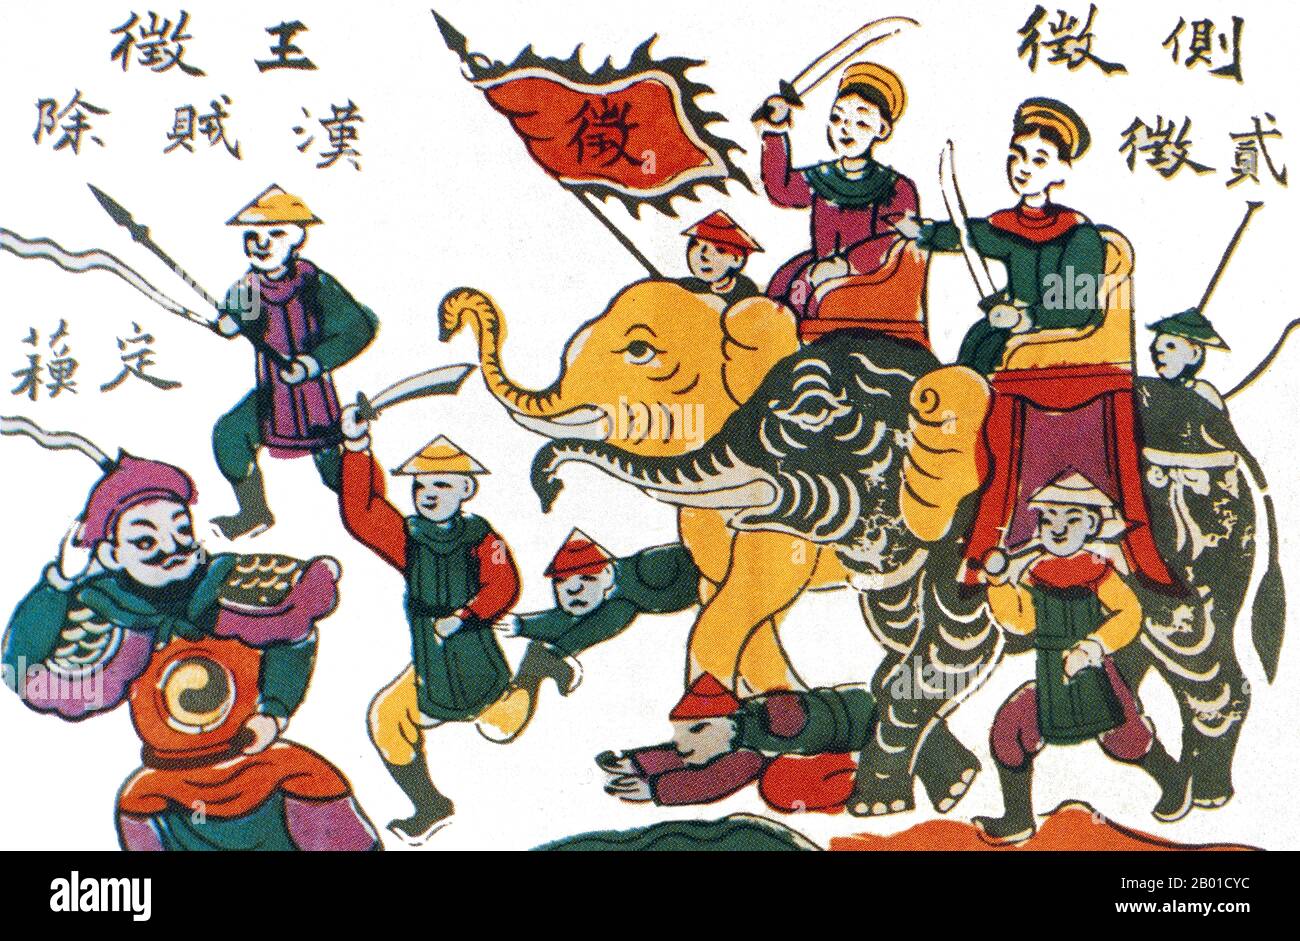 Vietnam: Le Suore Trung (Hai Ba Trung) sugli elefanti di guerra che perseguono la fuga cinese. Tradizionale pittura popolare dal villaggio di Dong ho, 20th ° secolo. Le Suore Trưng (c.. 12-43 CE), conosciuto in vietnamita come Hai Bà Trưng (letteralmente "le due Signore Trưng"), e individualmente come Trưng Trắc e Trưng Nhị, erano due leader di donne vietnamite del primo secolo che si ribellarono con successo contro la dinastia cinese Han per tre anni, e sono considerate come eroine nazionali del Vietnam. Le suore sono nate nel Vietnam del Nord, le date di nascita sono sconosciute, ma Trưng Trắc era più vecchio di Trưng Nhị. Foto Stock